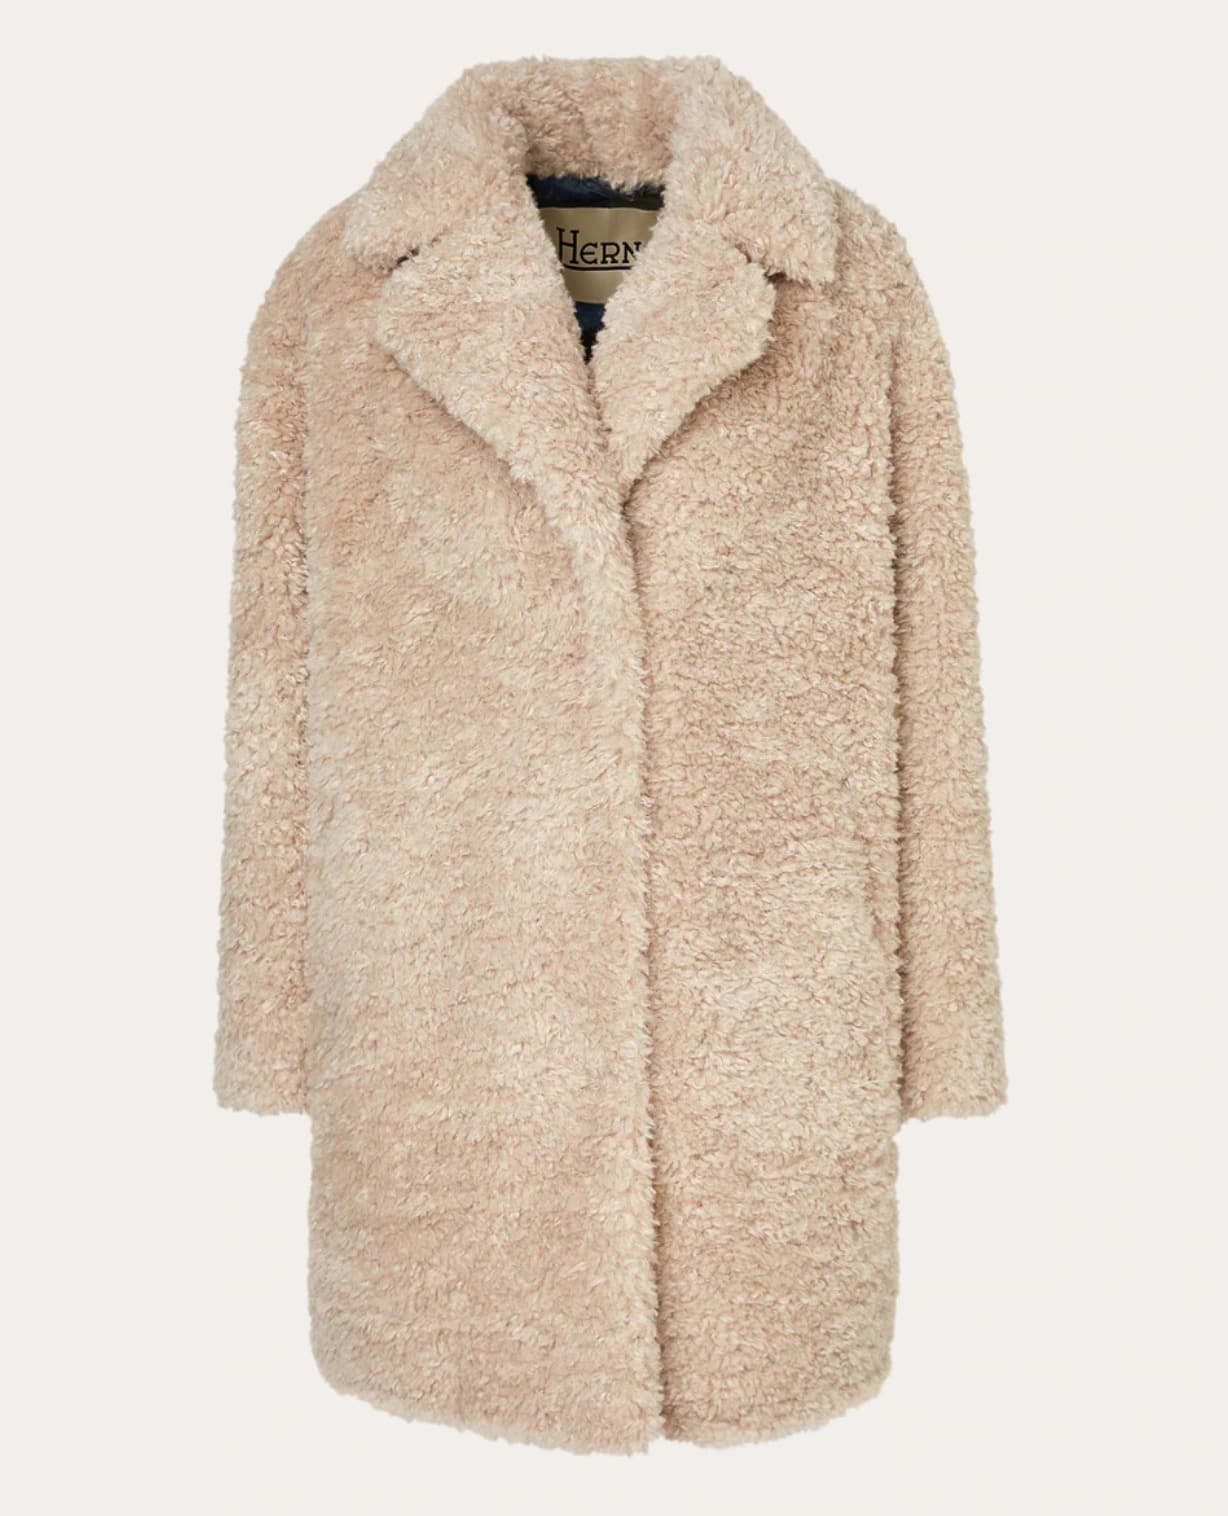 Herno's fur coat